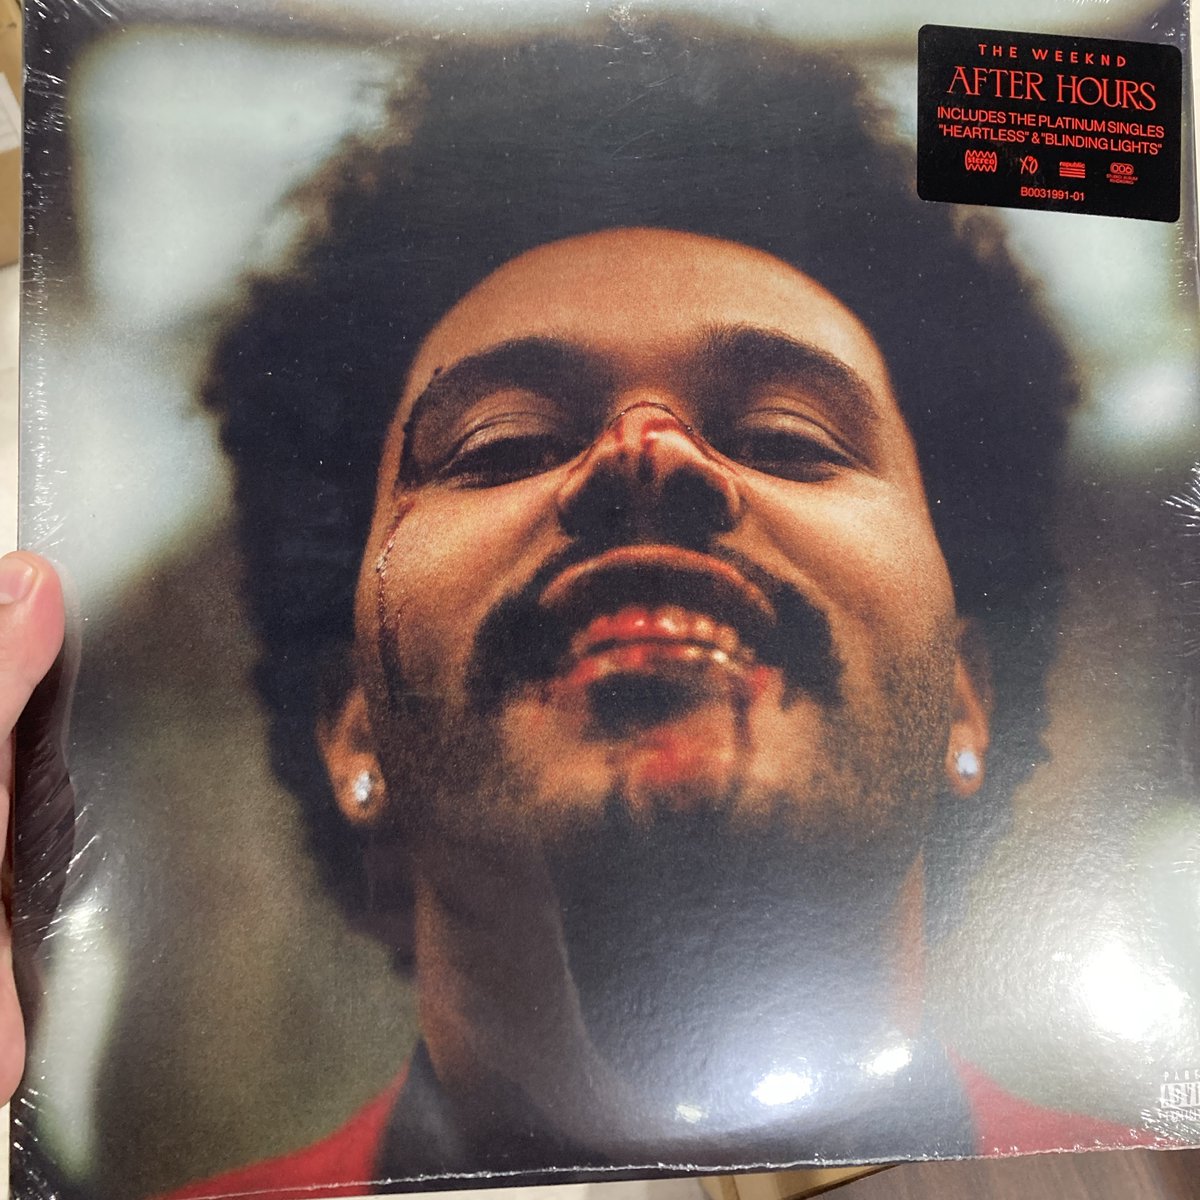 【入荷情報】
The Weekndの作品がまとめて入荷しました◎
好きなアーティストのアルバムは、大切にコレクションしたいものですね✨
他にも現行アーティストの作品沢山ご用意しております！
ご来店お待ちしております～！
#Osaka #vinylshop #vinylrecords #recordstore #アナログ #レコード